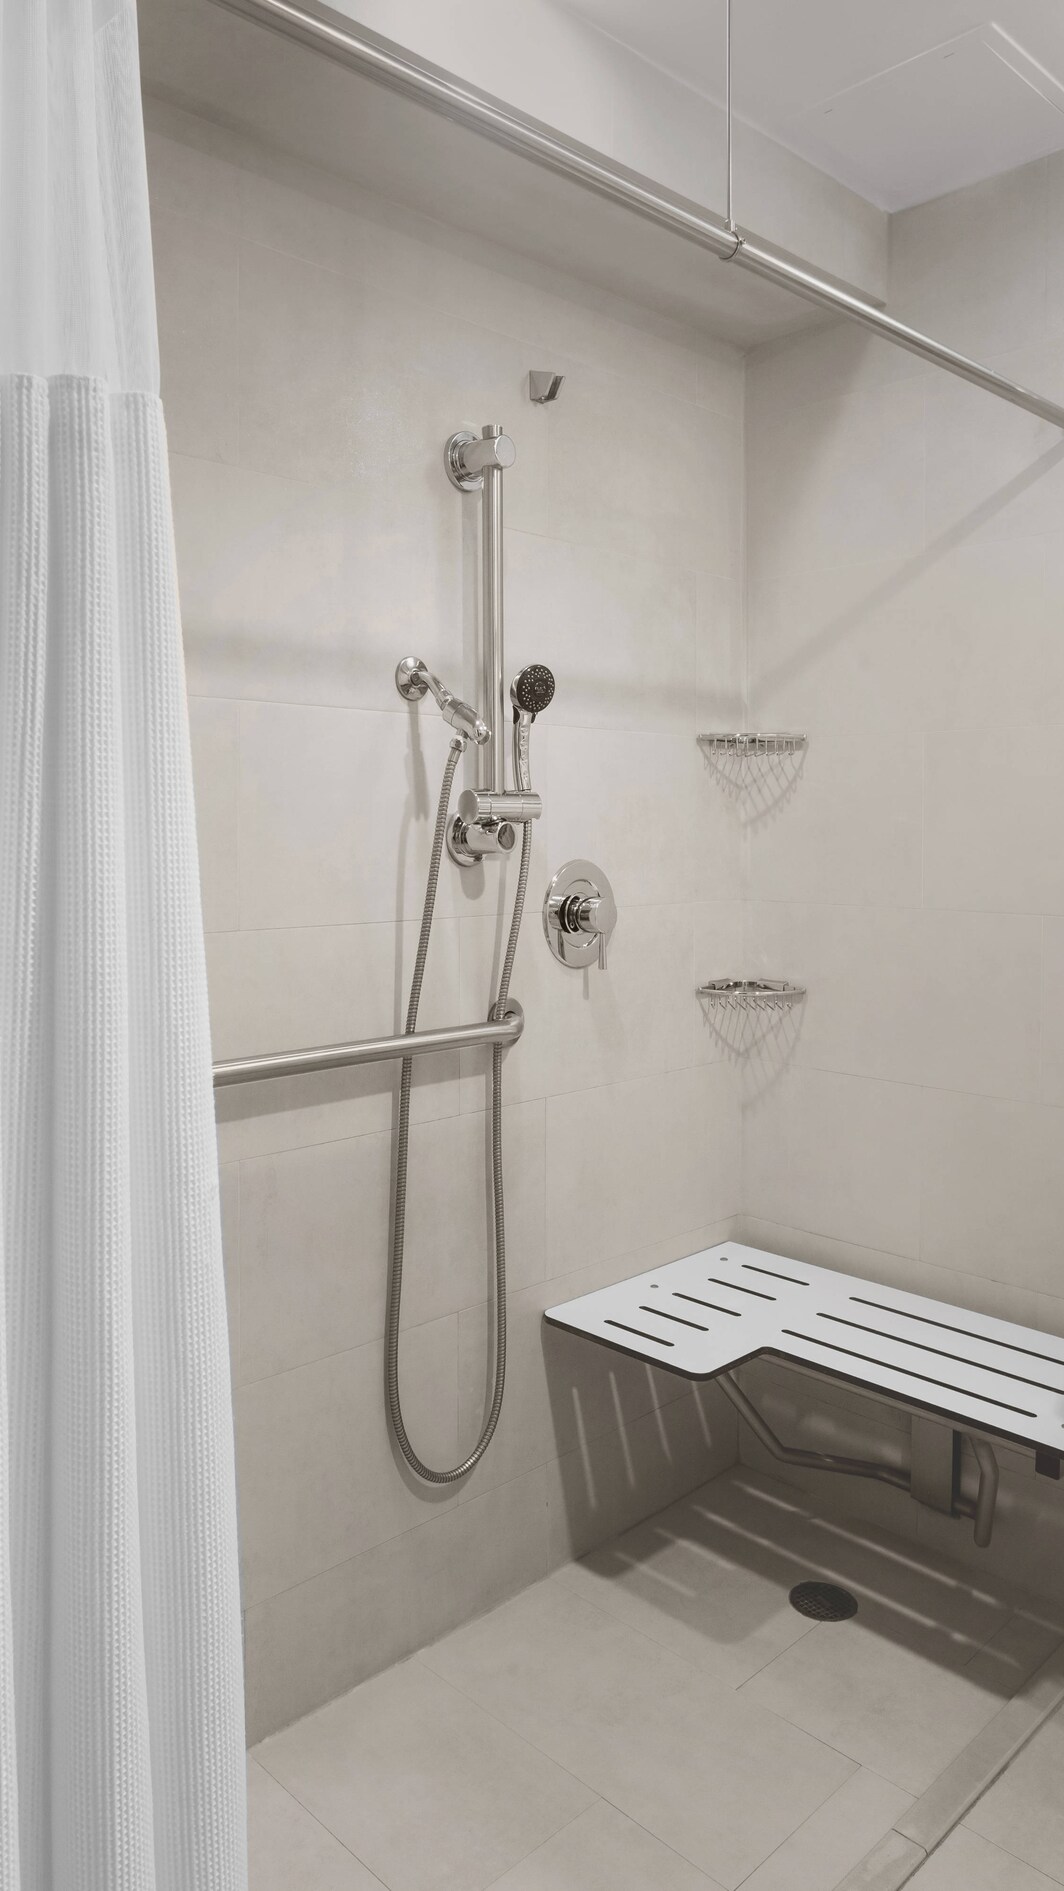 バリアフリー客室のバスルーム－ADA (アメリカ障害者法) 規格の車椅子用シャワー